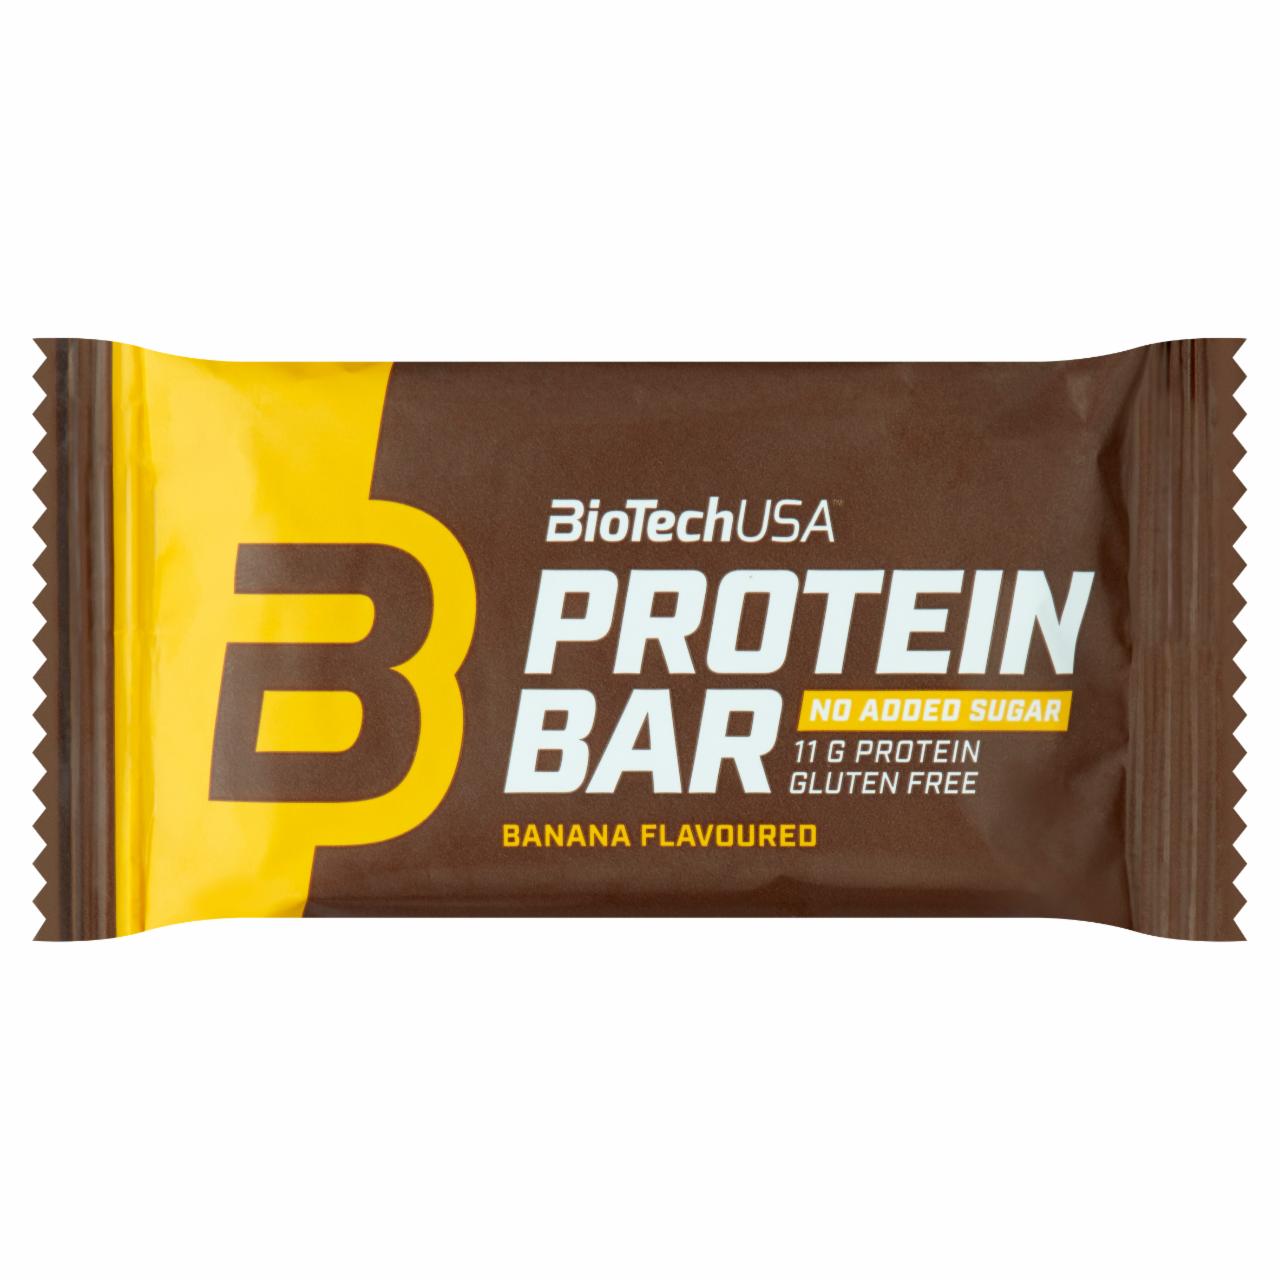 Képek - Protein Bar banán ízű bevont fehérjeszelet BioTechUSA